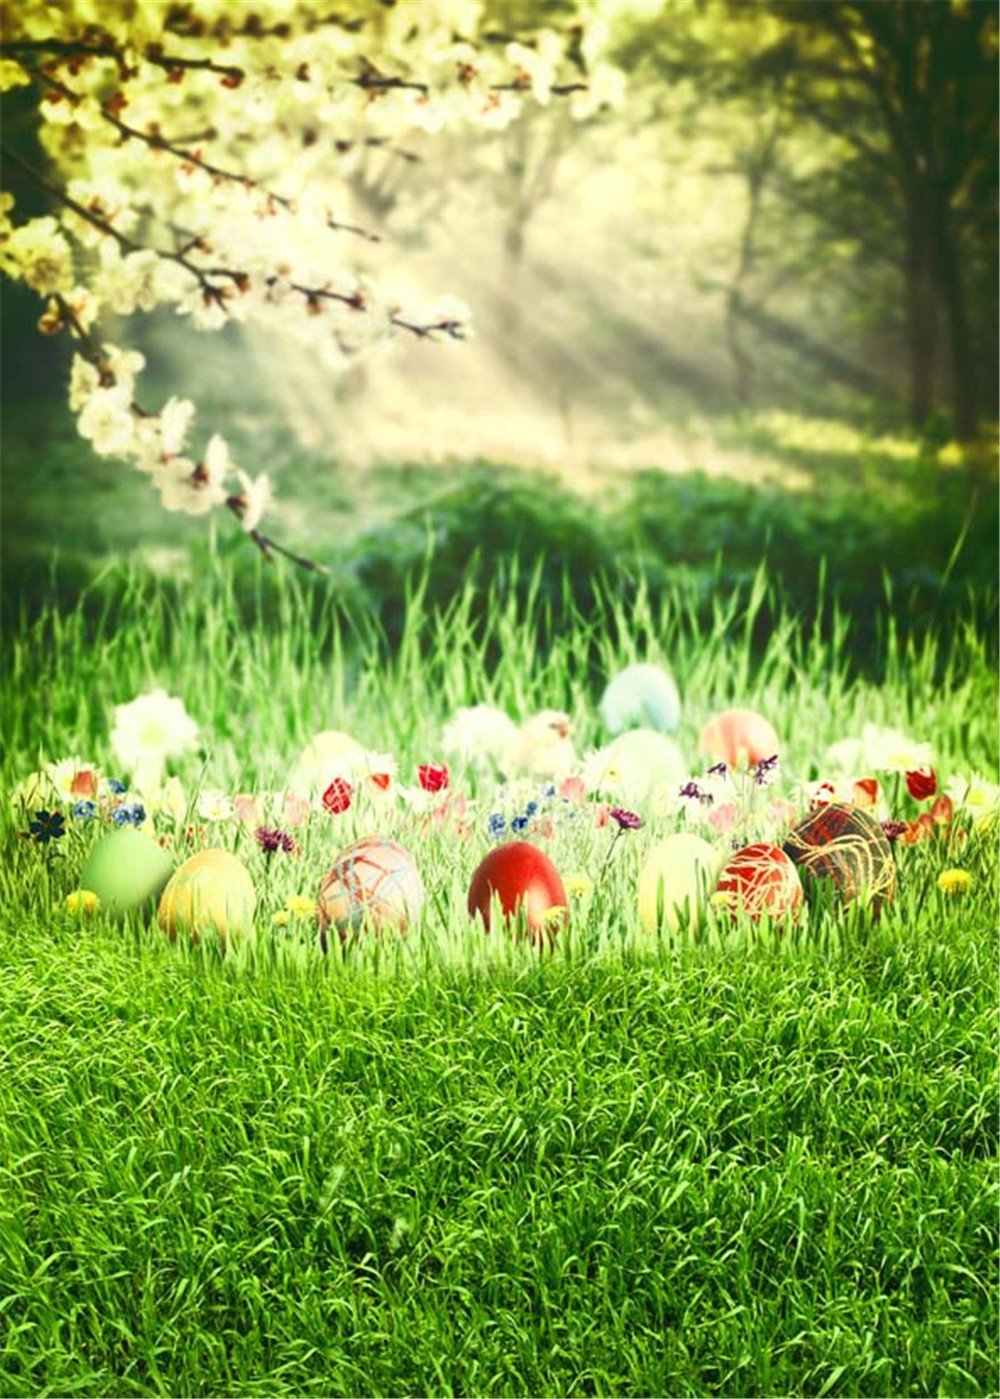 أشعة الشمس عبر غابة خوخه التصوير الخلفيات الربيع المطبوعة الكمثرى الزهور الخضراء العشب الفصح البيض الطفل الوليد صورة خلفية